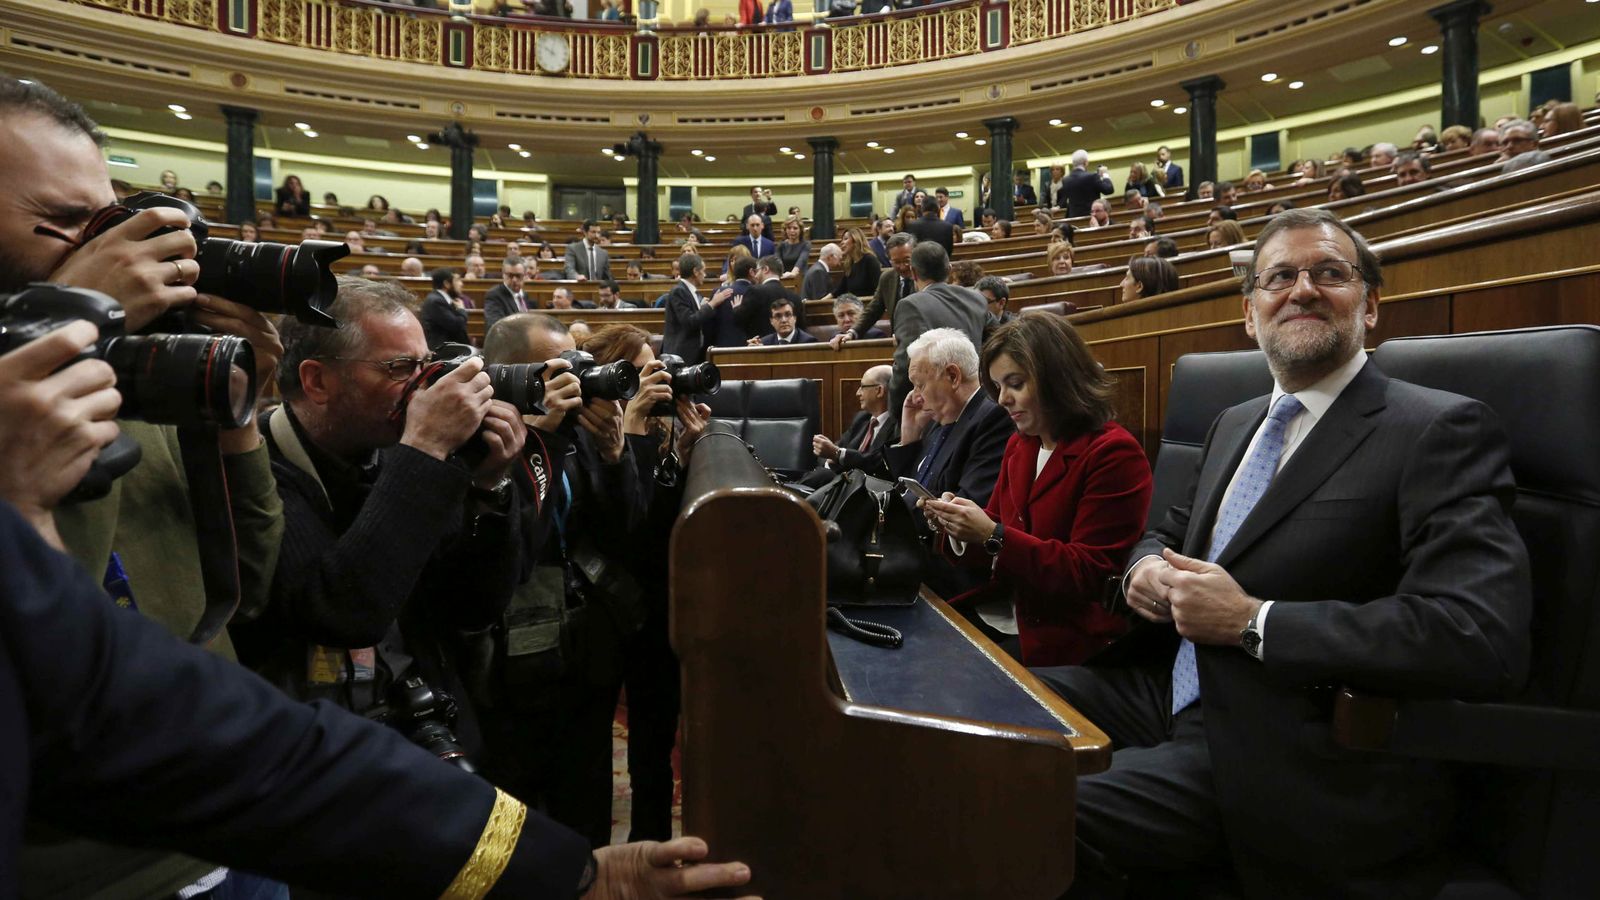 Foto: El presidente del Gobierno en funciones, Mariano Rajoy, en el Congreso junto a todos sus ministros y la vicepresidenta, Soraya Sáenz de Santamaría. (Efe) 